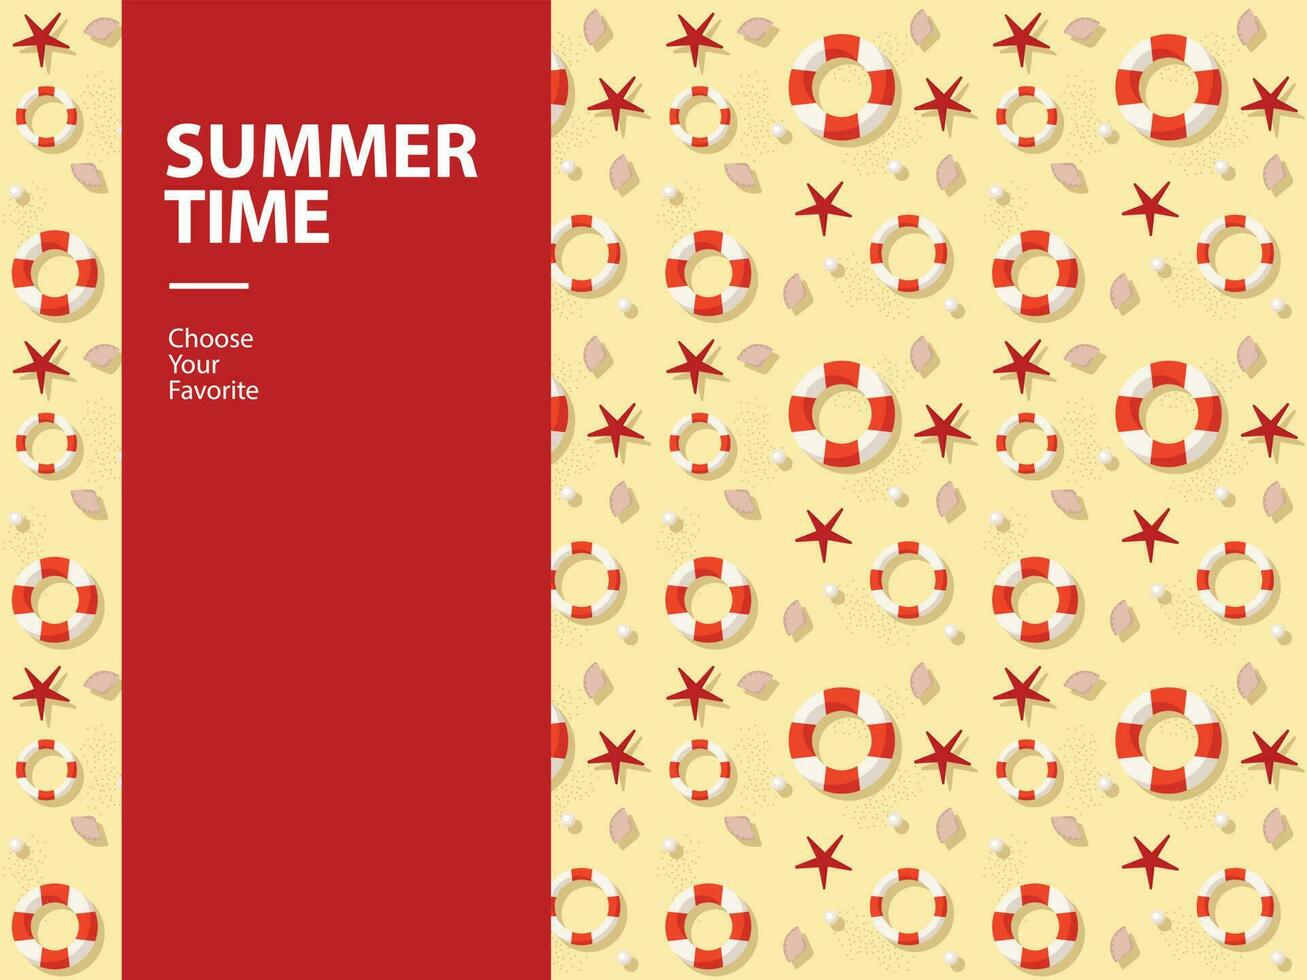 verão venda período de férias elemento festa vetor feriado tropical azul poster de praia estação ícone desatado